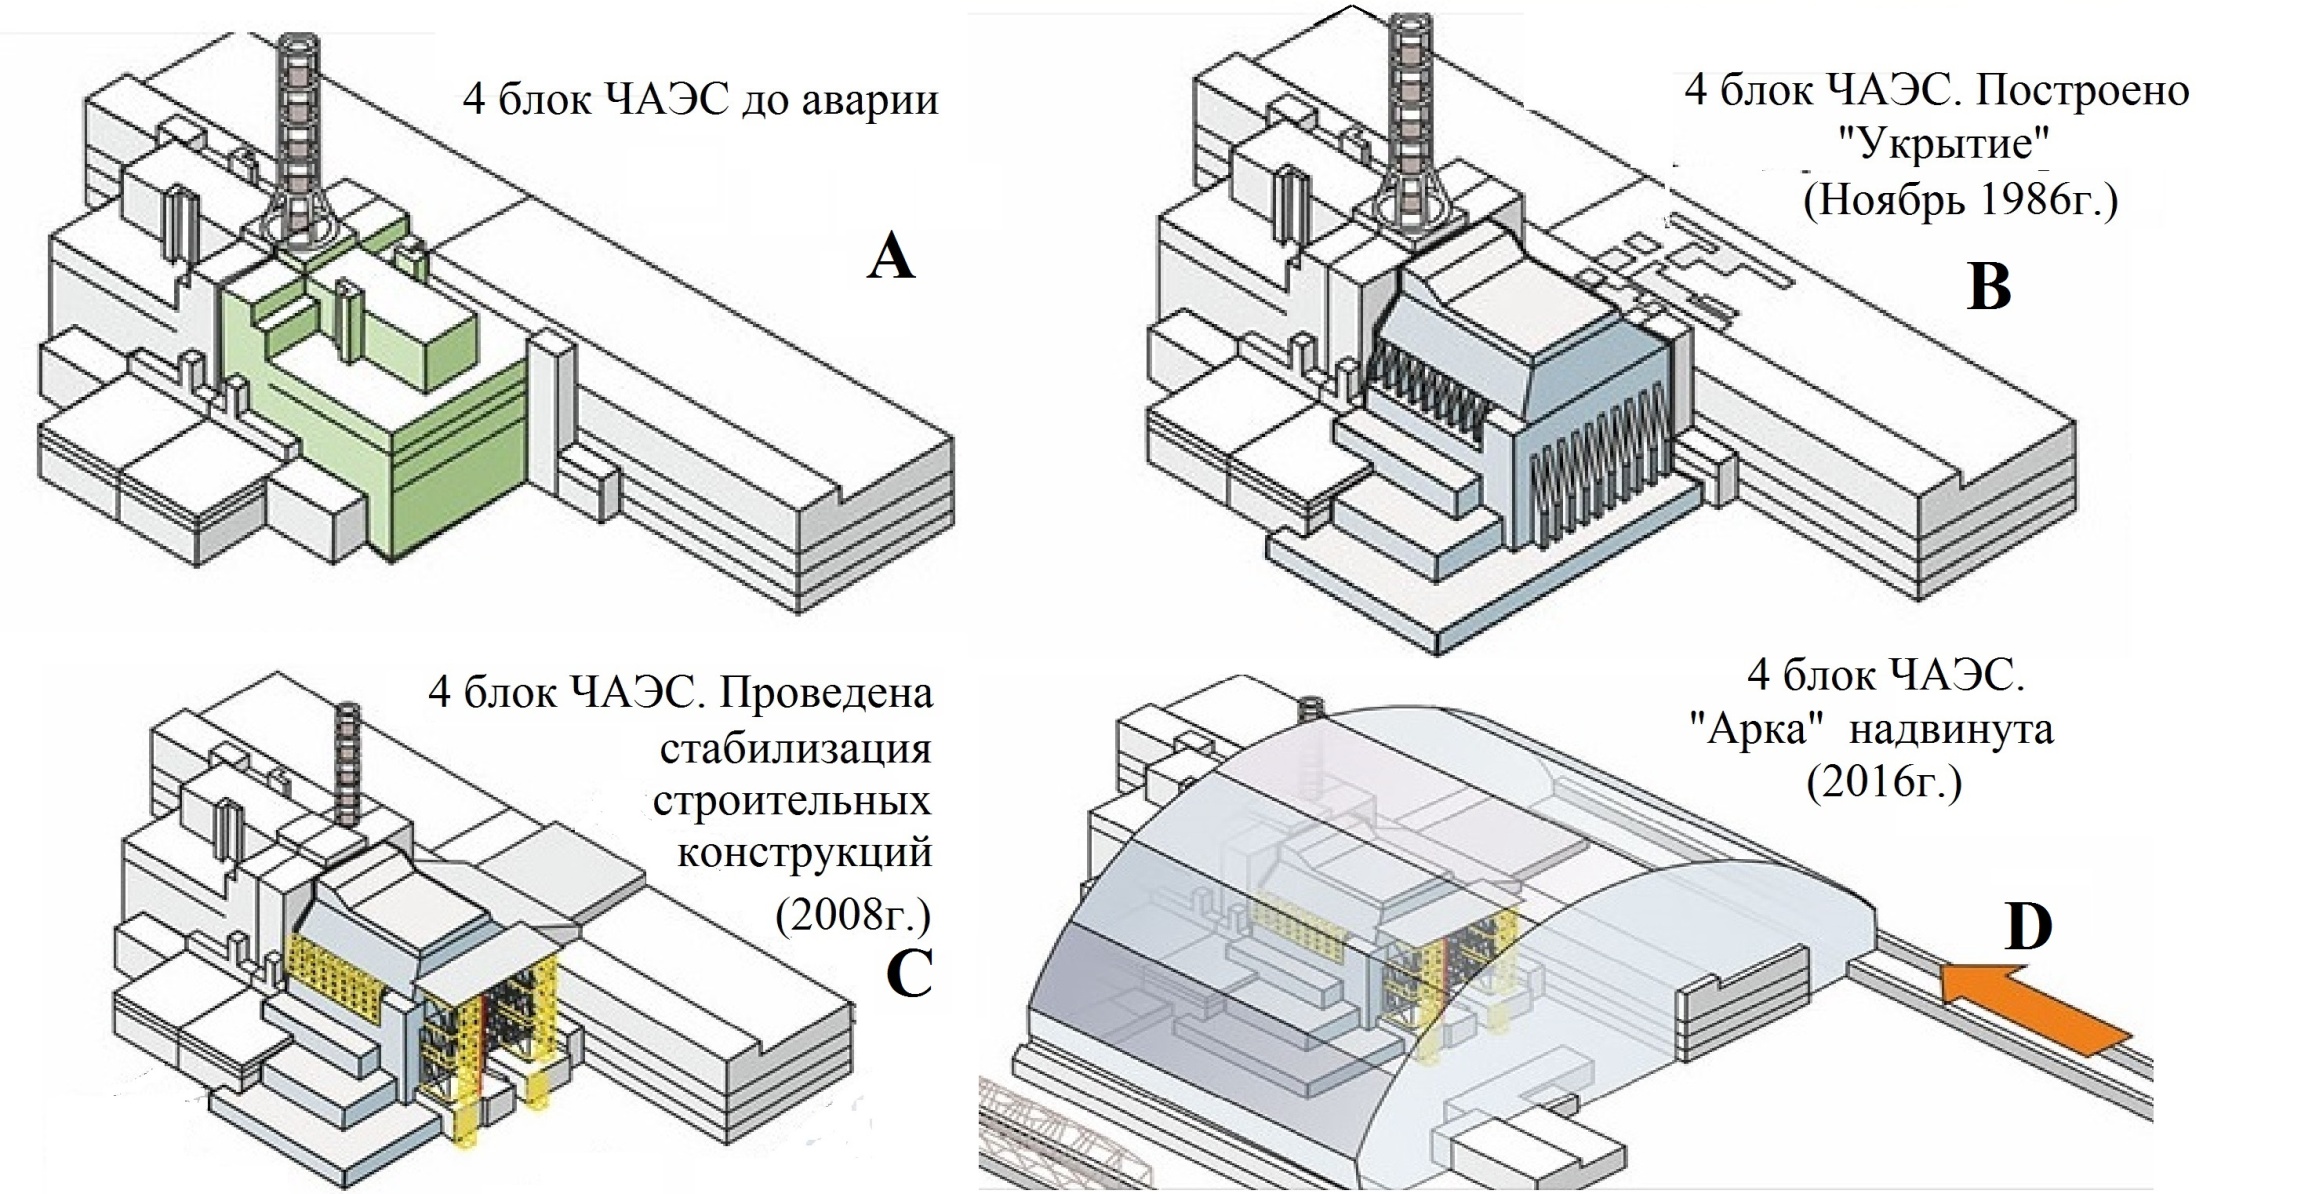 Схема Чернобыльской АЭС до аварии